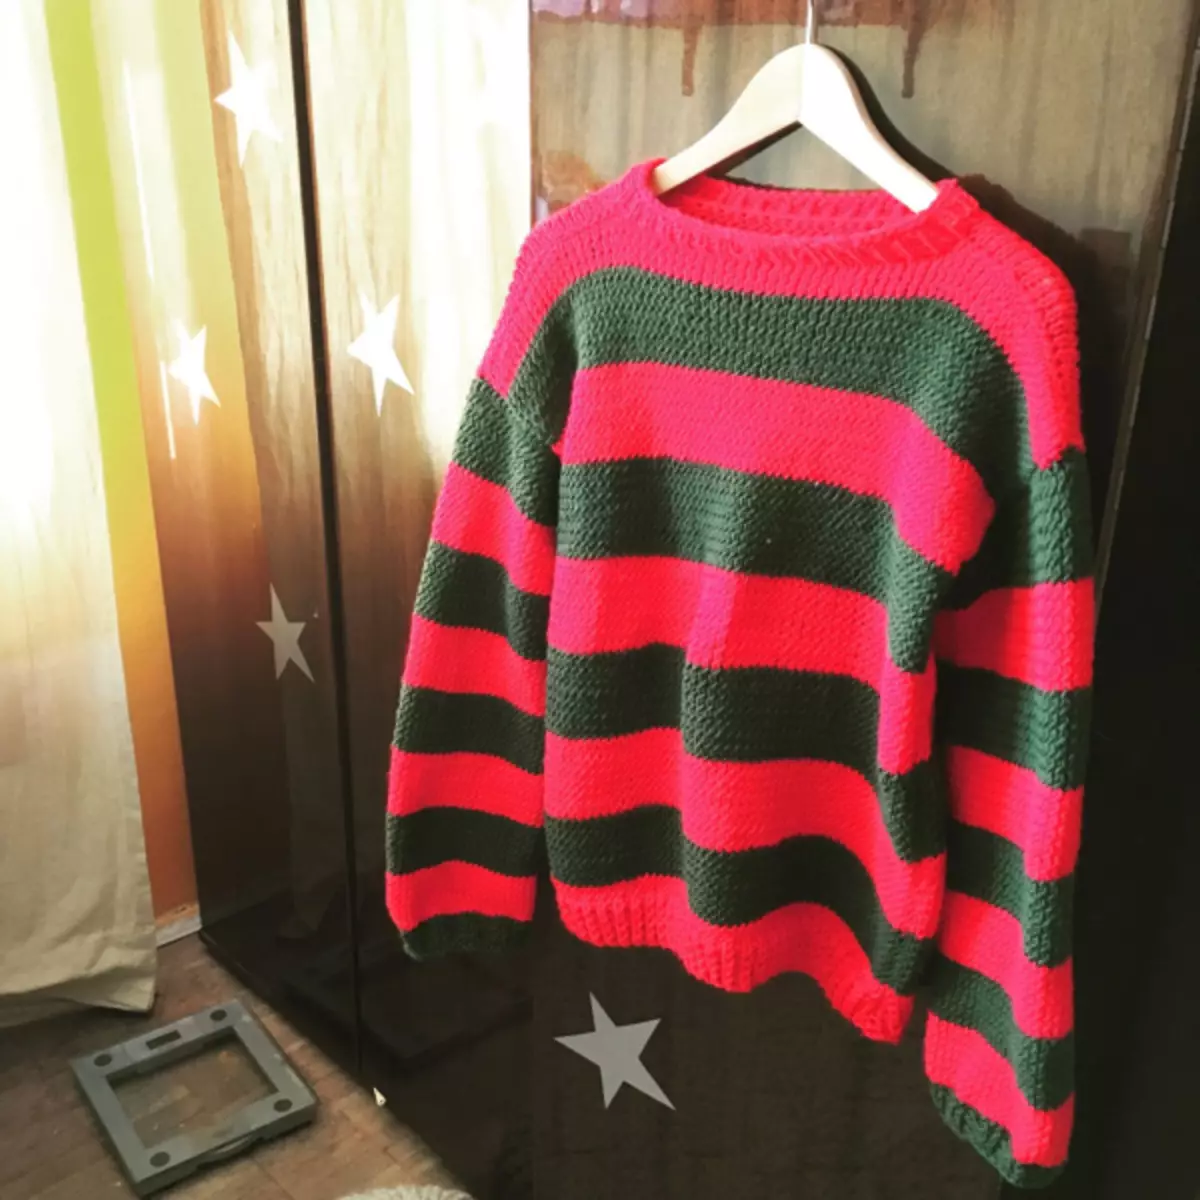 Freddie Kruger Sweater: Scheme bi wêne û vîdyoyê